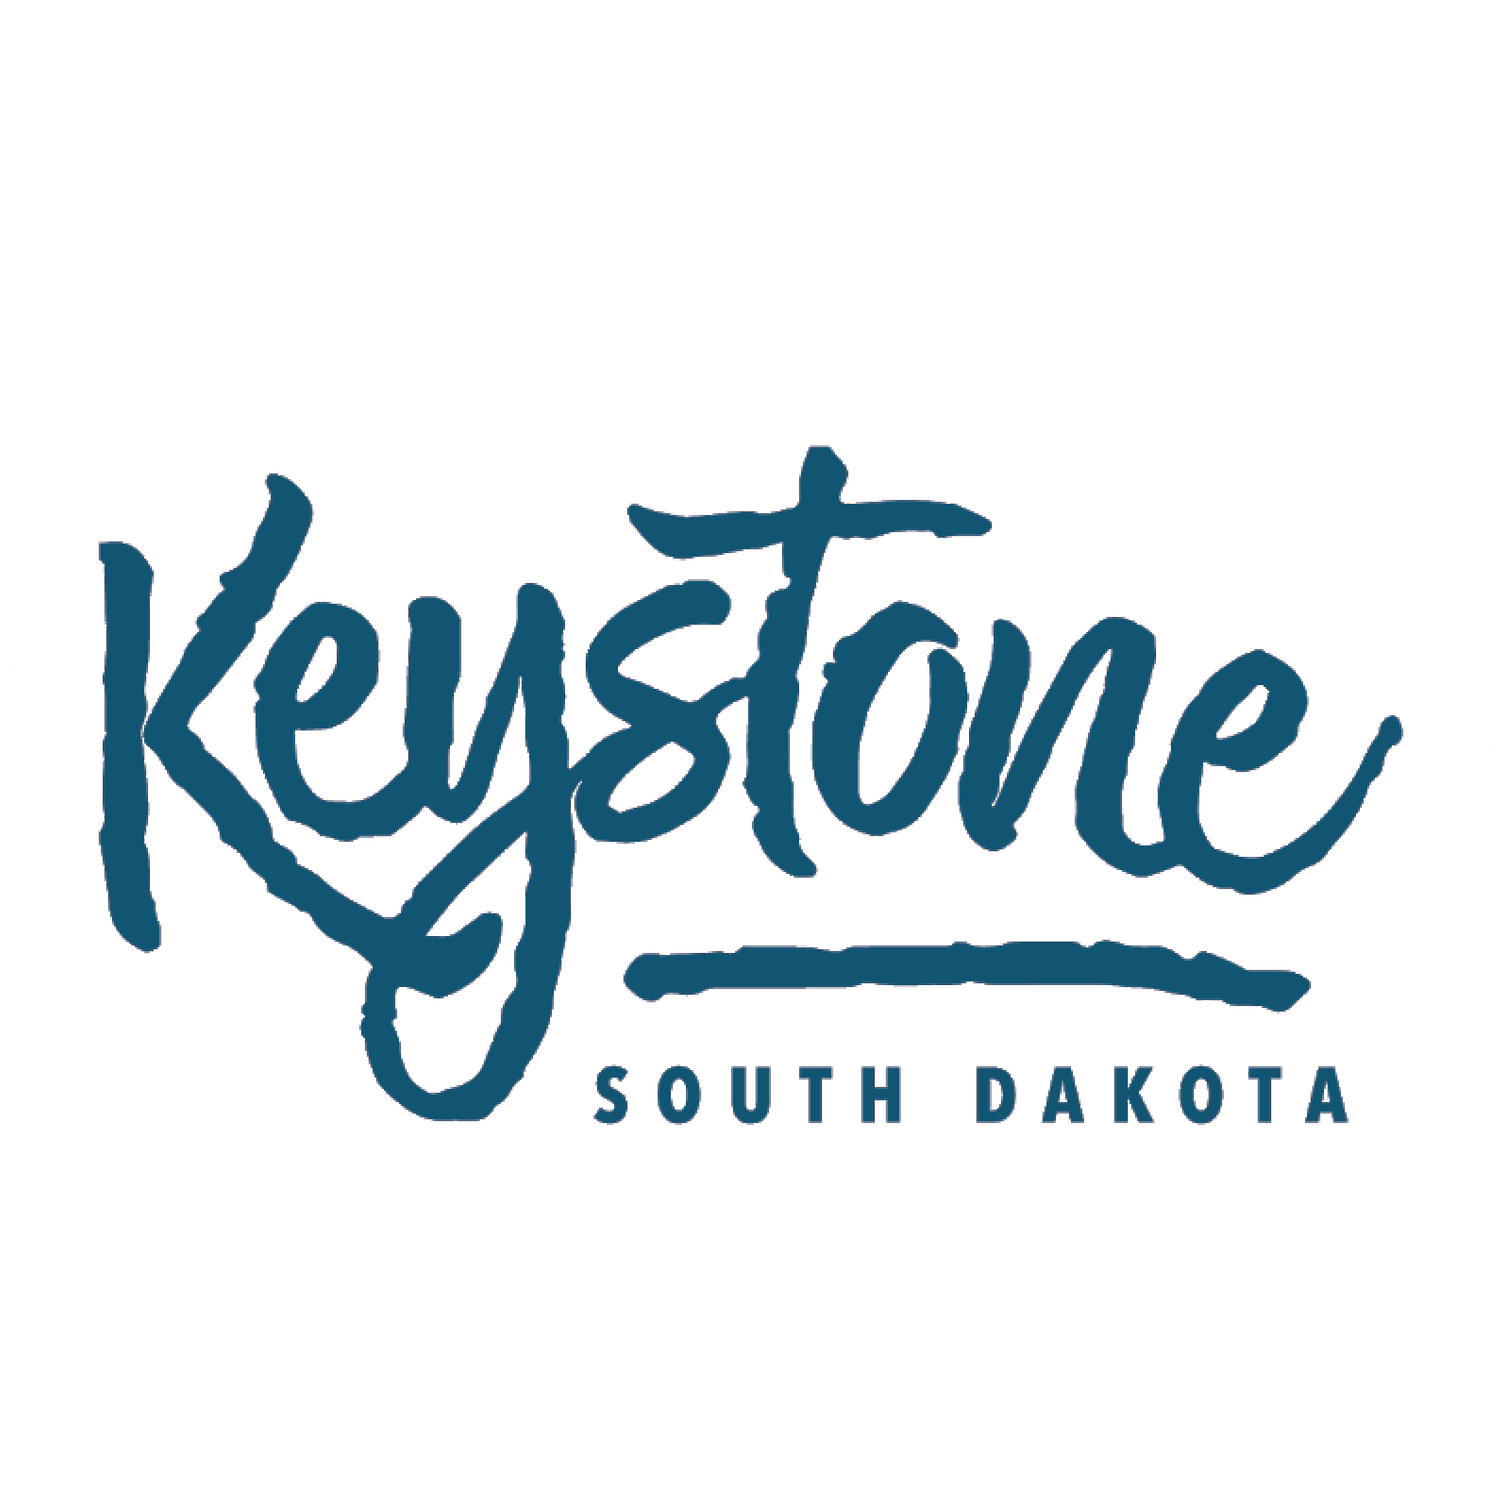 Keystone, South Dakota Logo